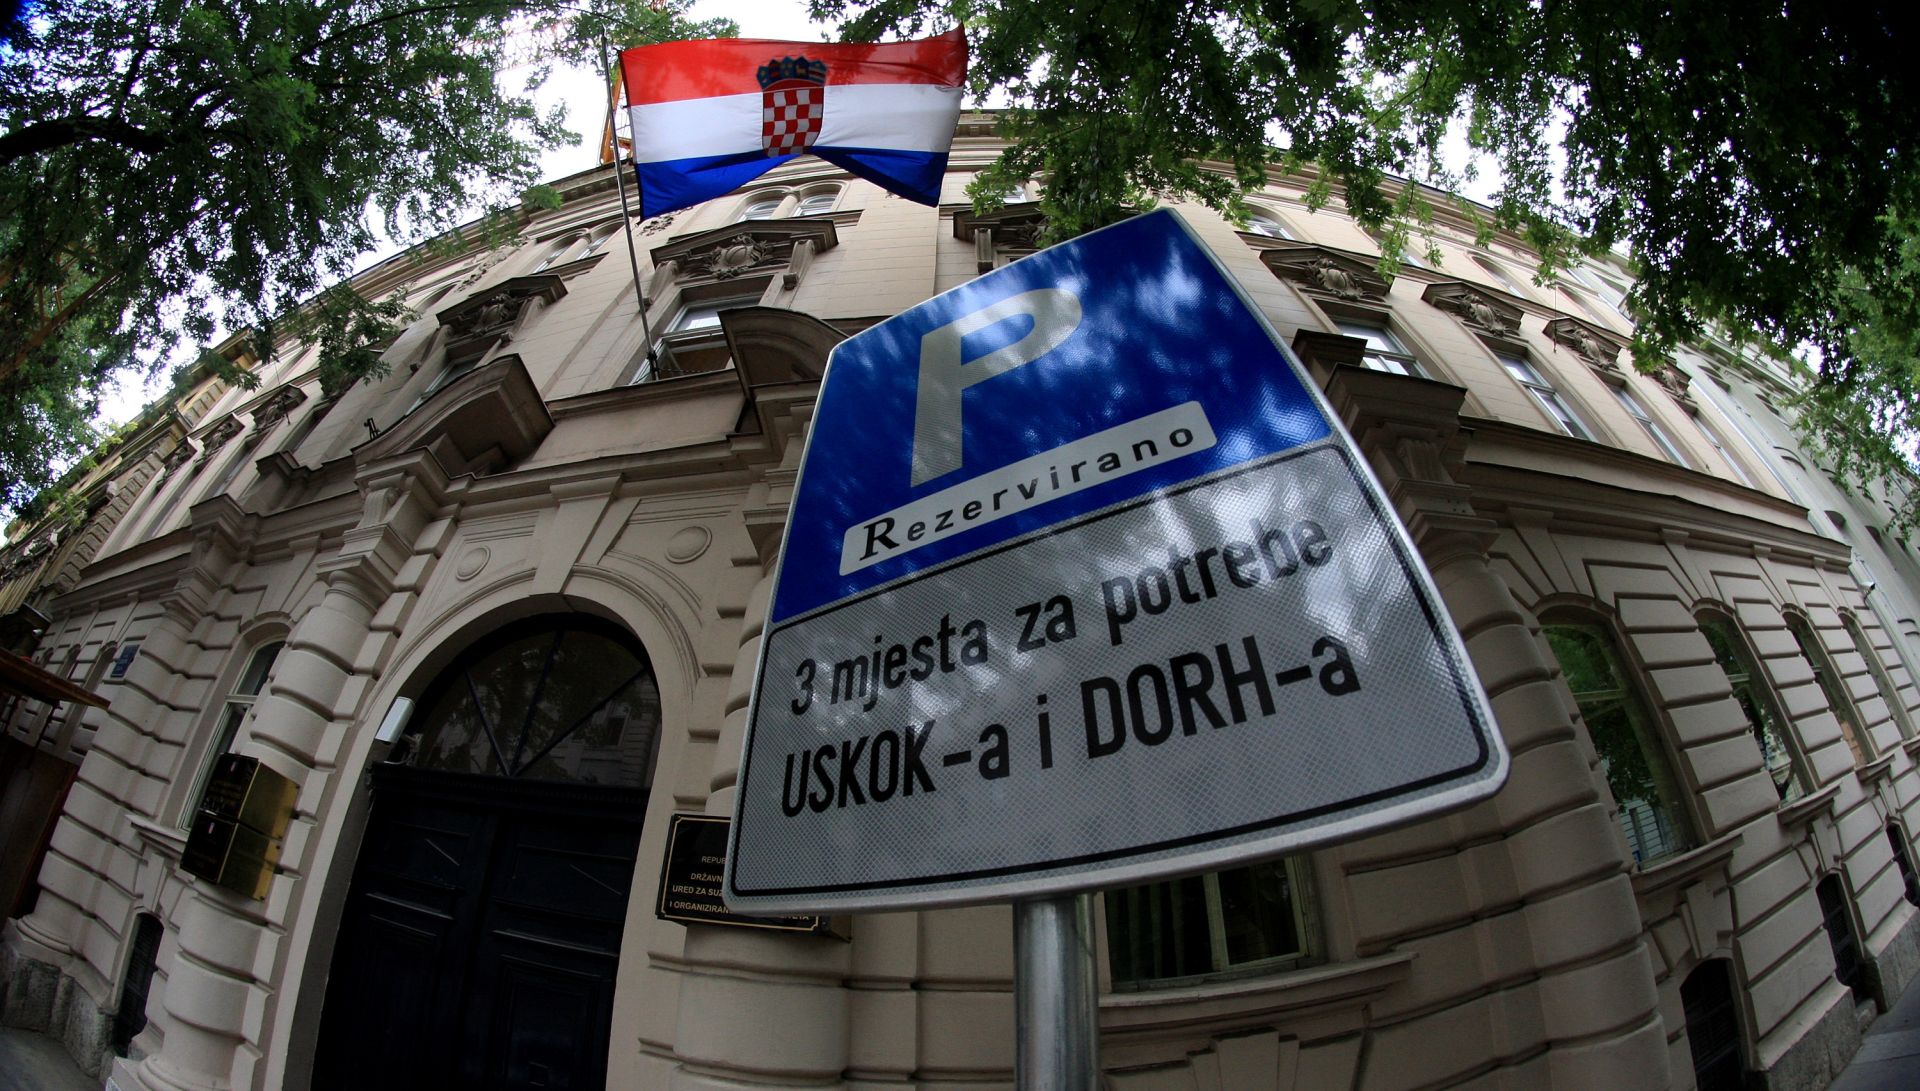 21.07.2001. Gajeva 30,Zagreb - Zgrada u Gajevoj 30 u kojoj je sjediste DORH-a i USKOK-a.
Photo: Boris Scitar/PIXSELL